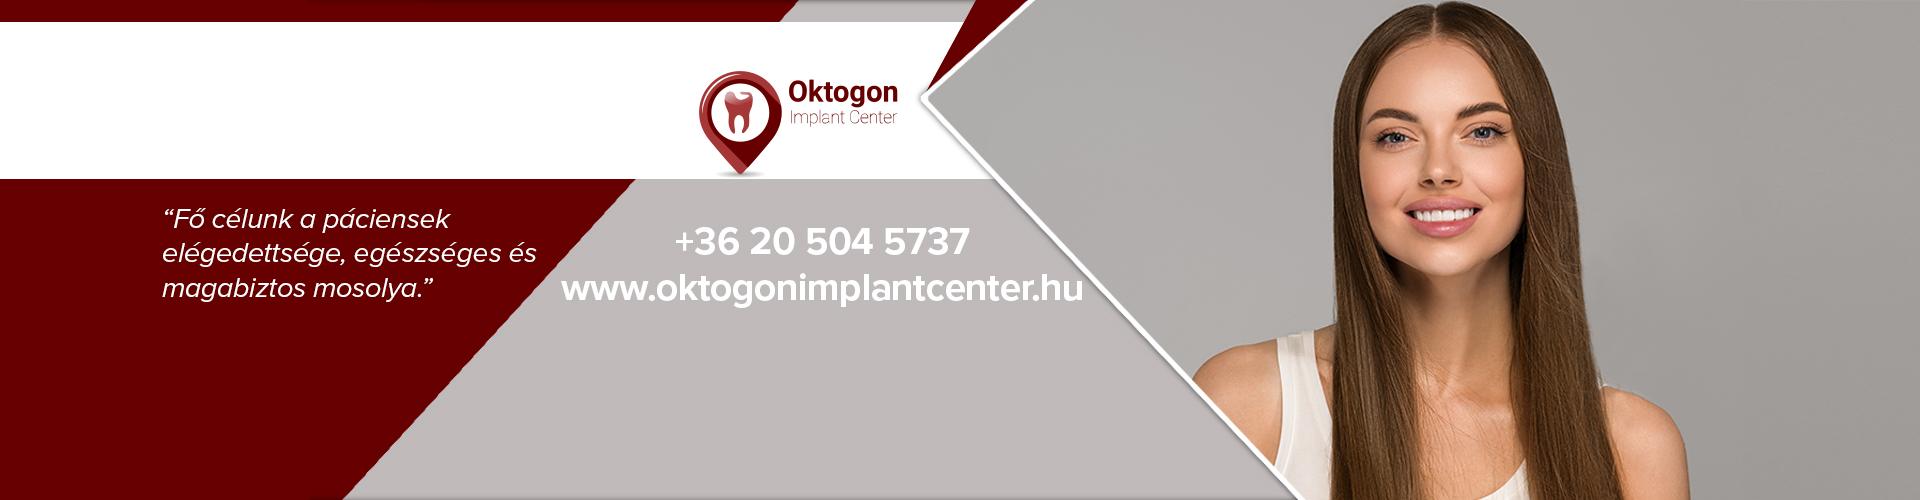 Oktogon Implant Center